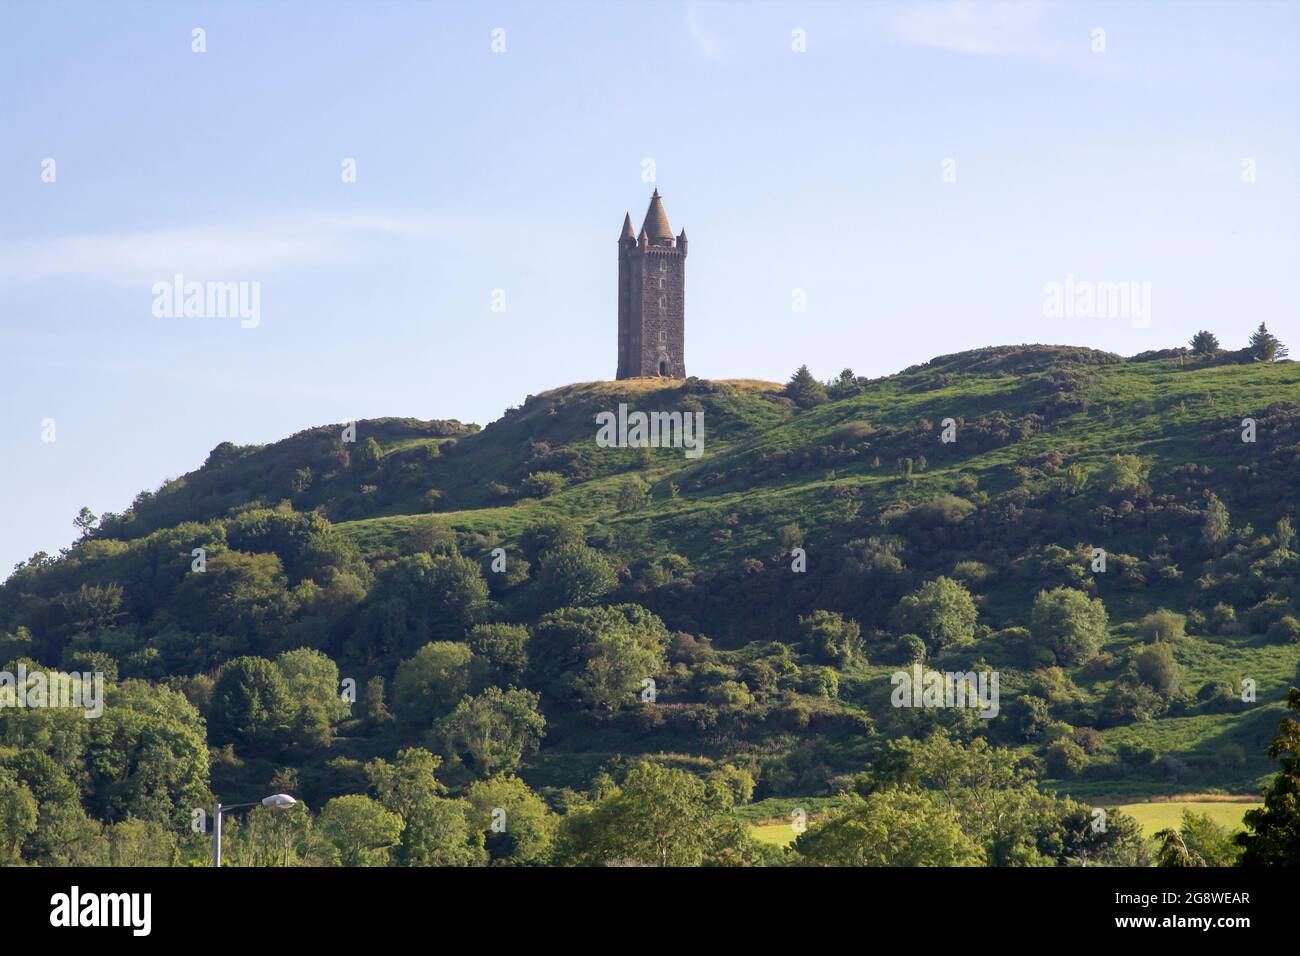 21 Julio 2021 El Monumento a la Torre Scrabo construido en la colina Scrabo que domina el horizonte de Newtownards en el condado de Down Northern Ireland Foto de stock